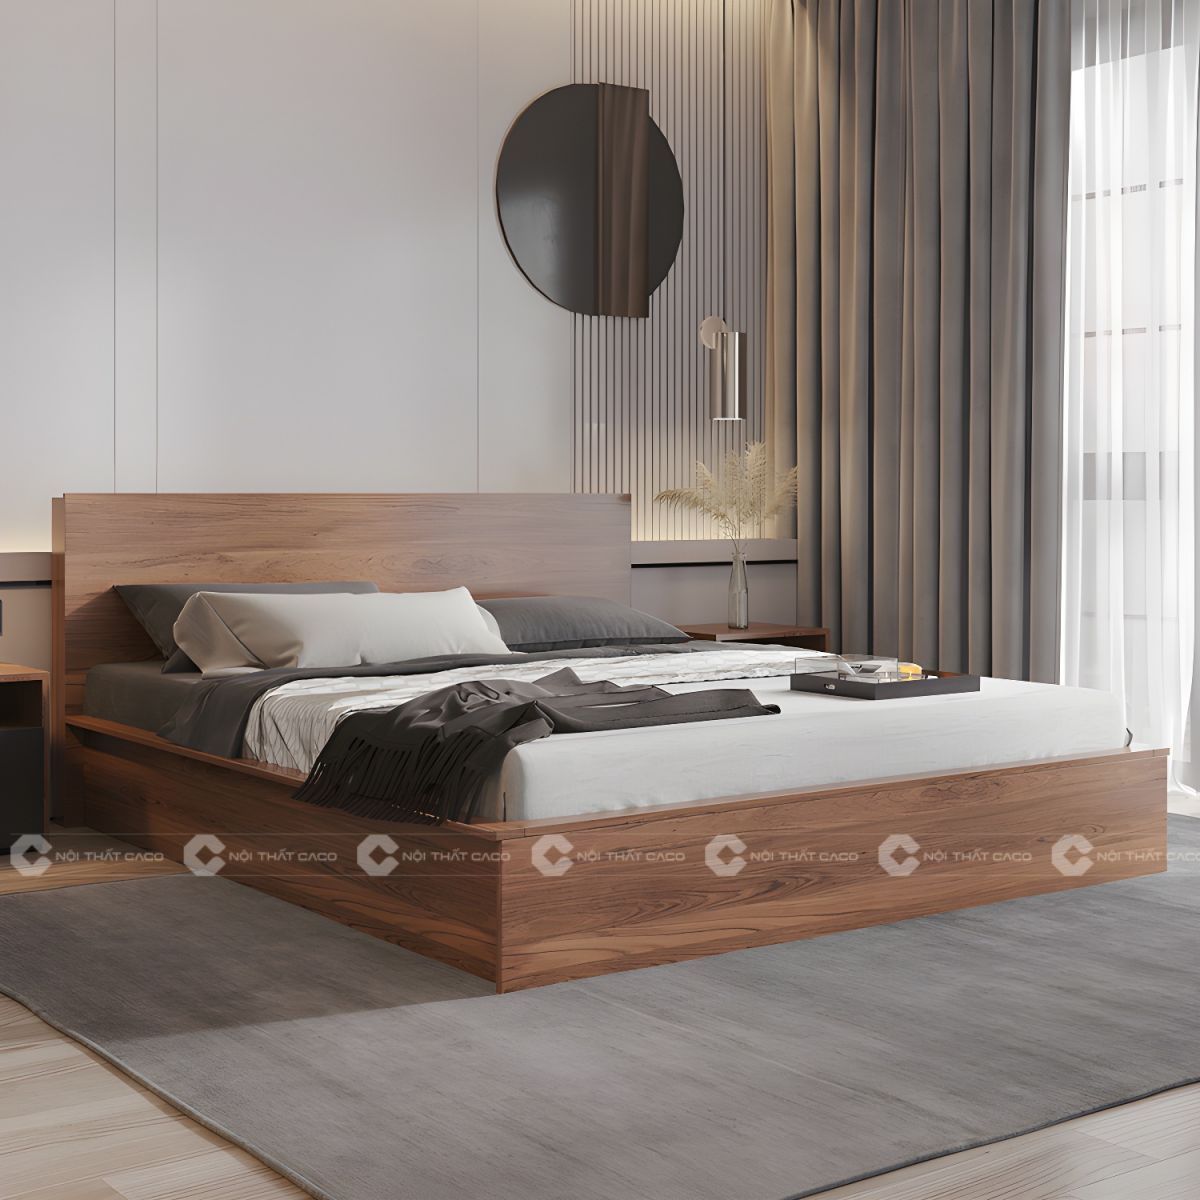 Giường ngủ gỗ công nghiệp màu nâu vân gỗ sang trọng